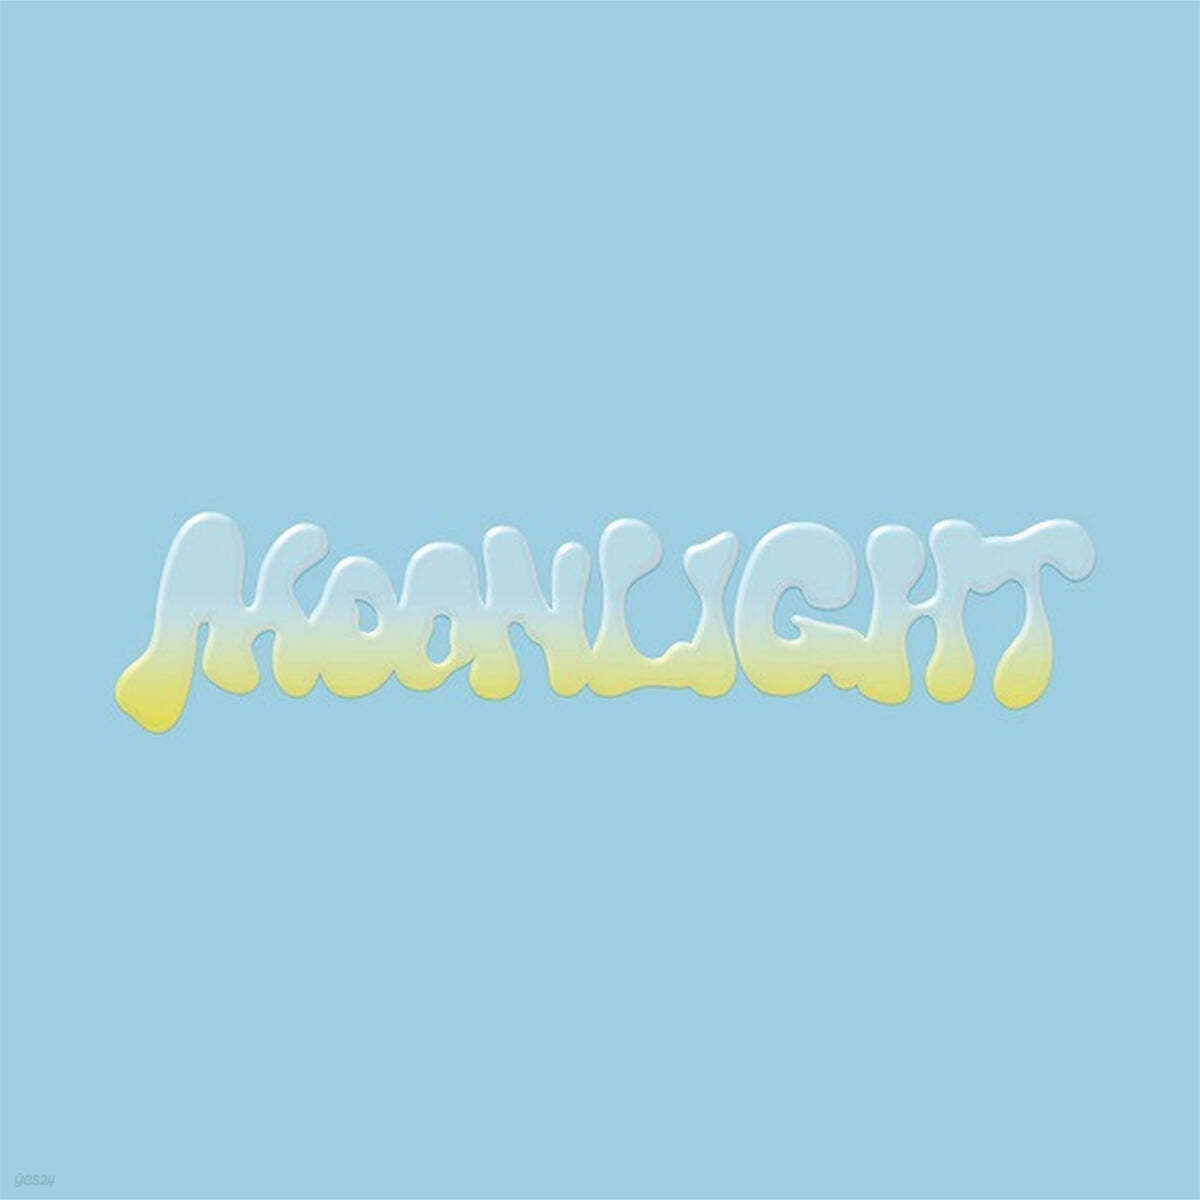 엔시티 드림 (NCT DREAM) - Moonlight [Special Ver.]